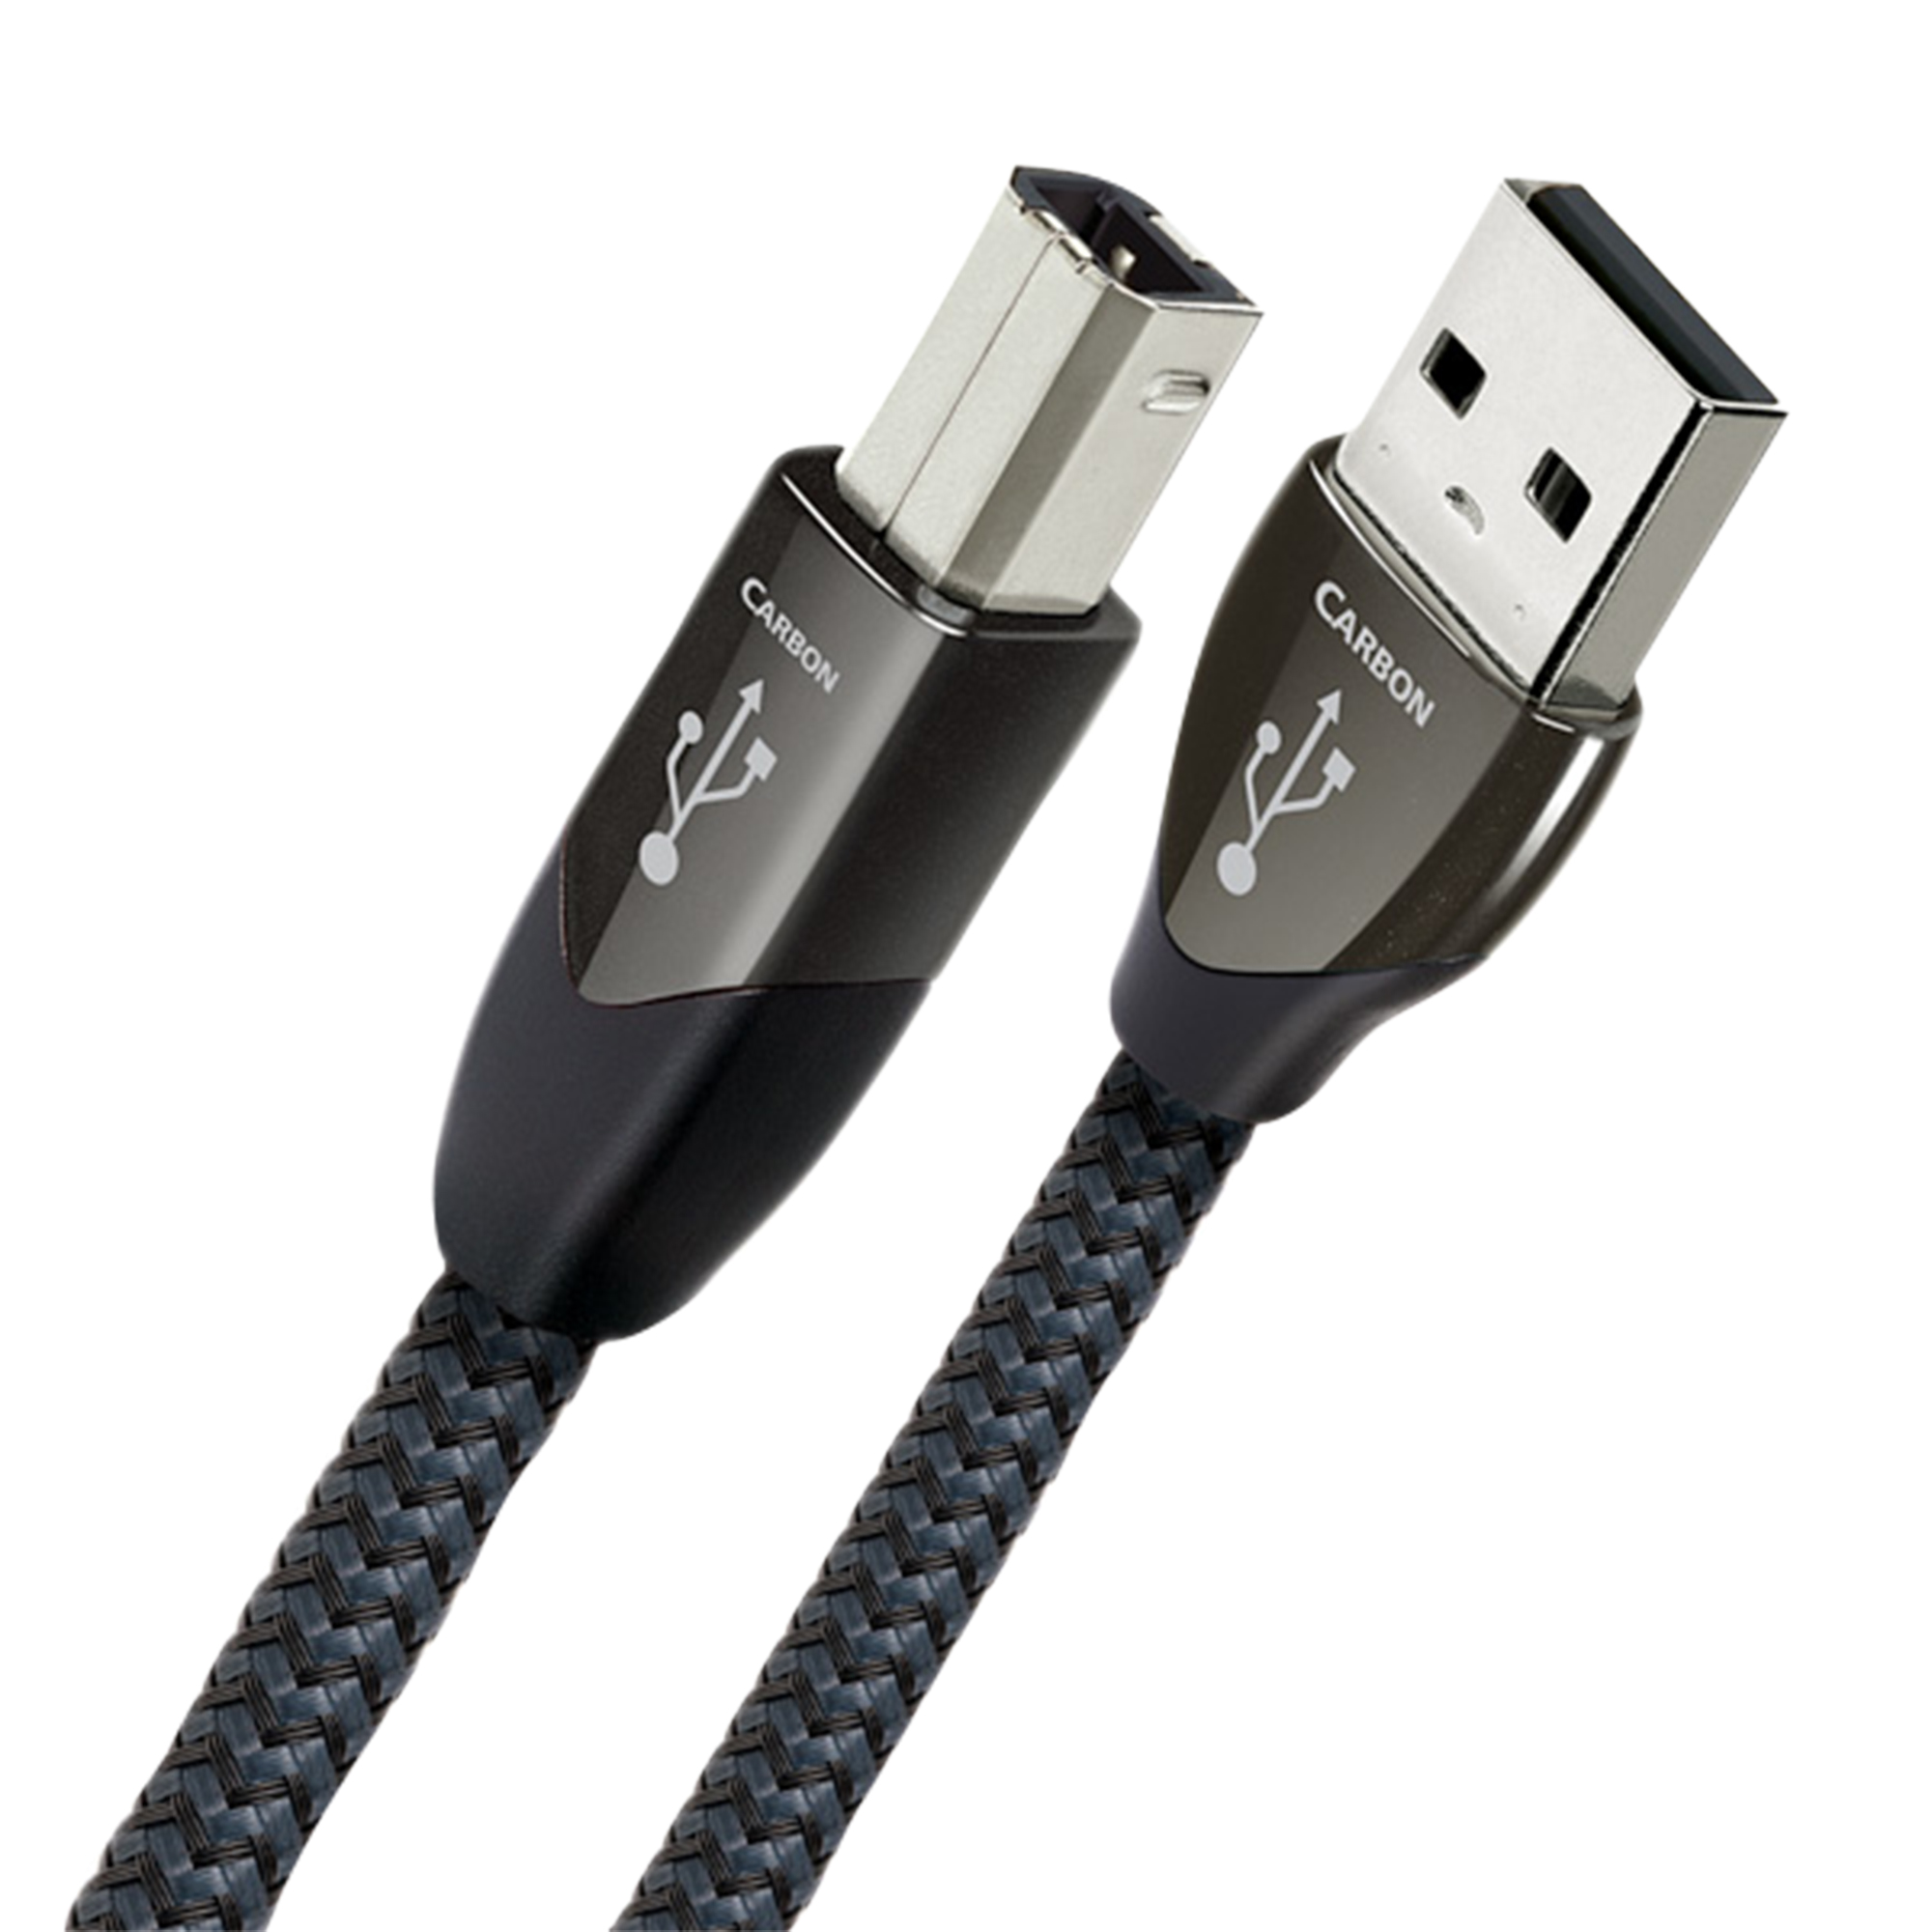 AudioQuest Carbon USB kabel - Kabler - Digitalkabel